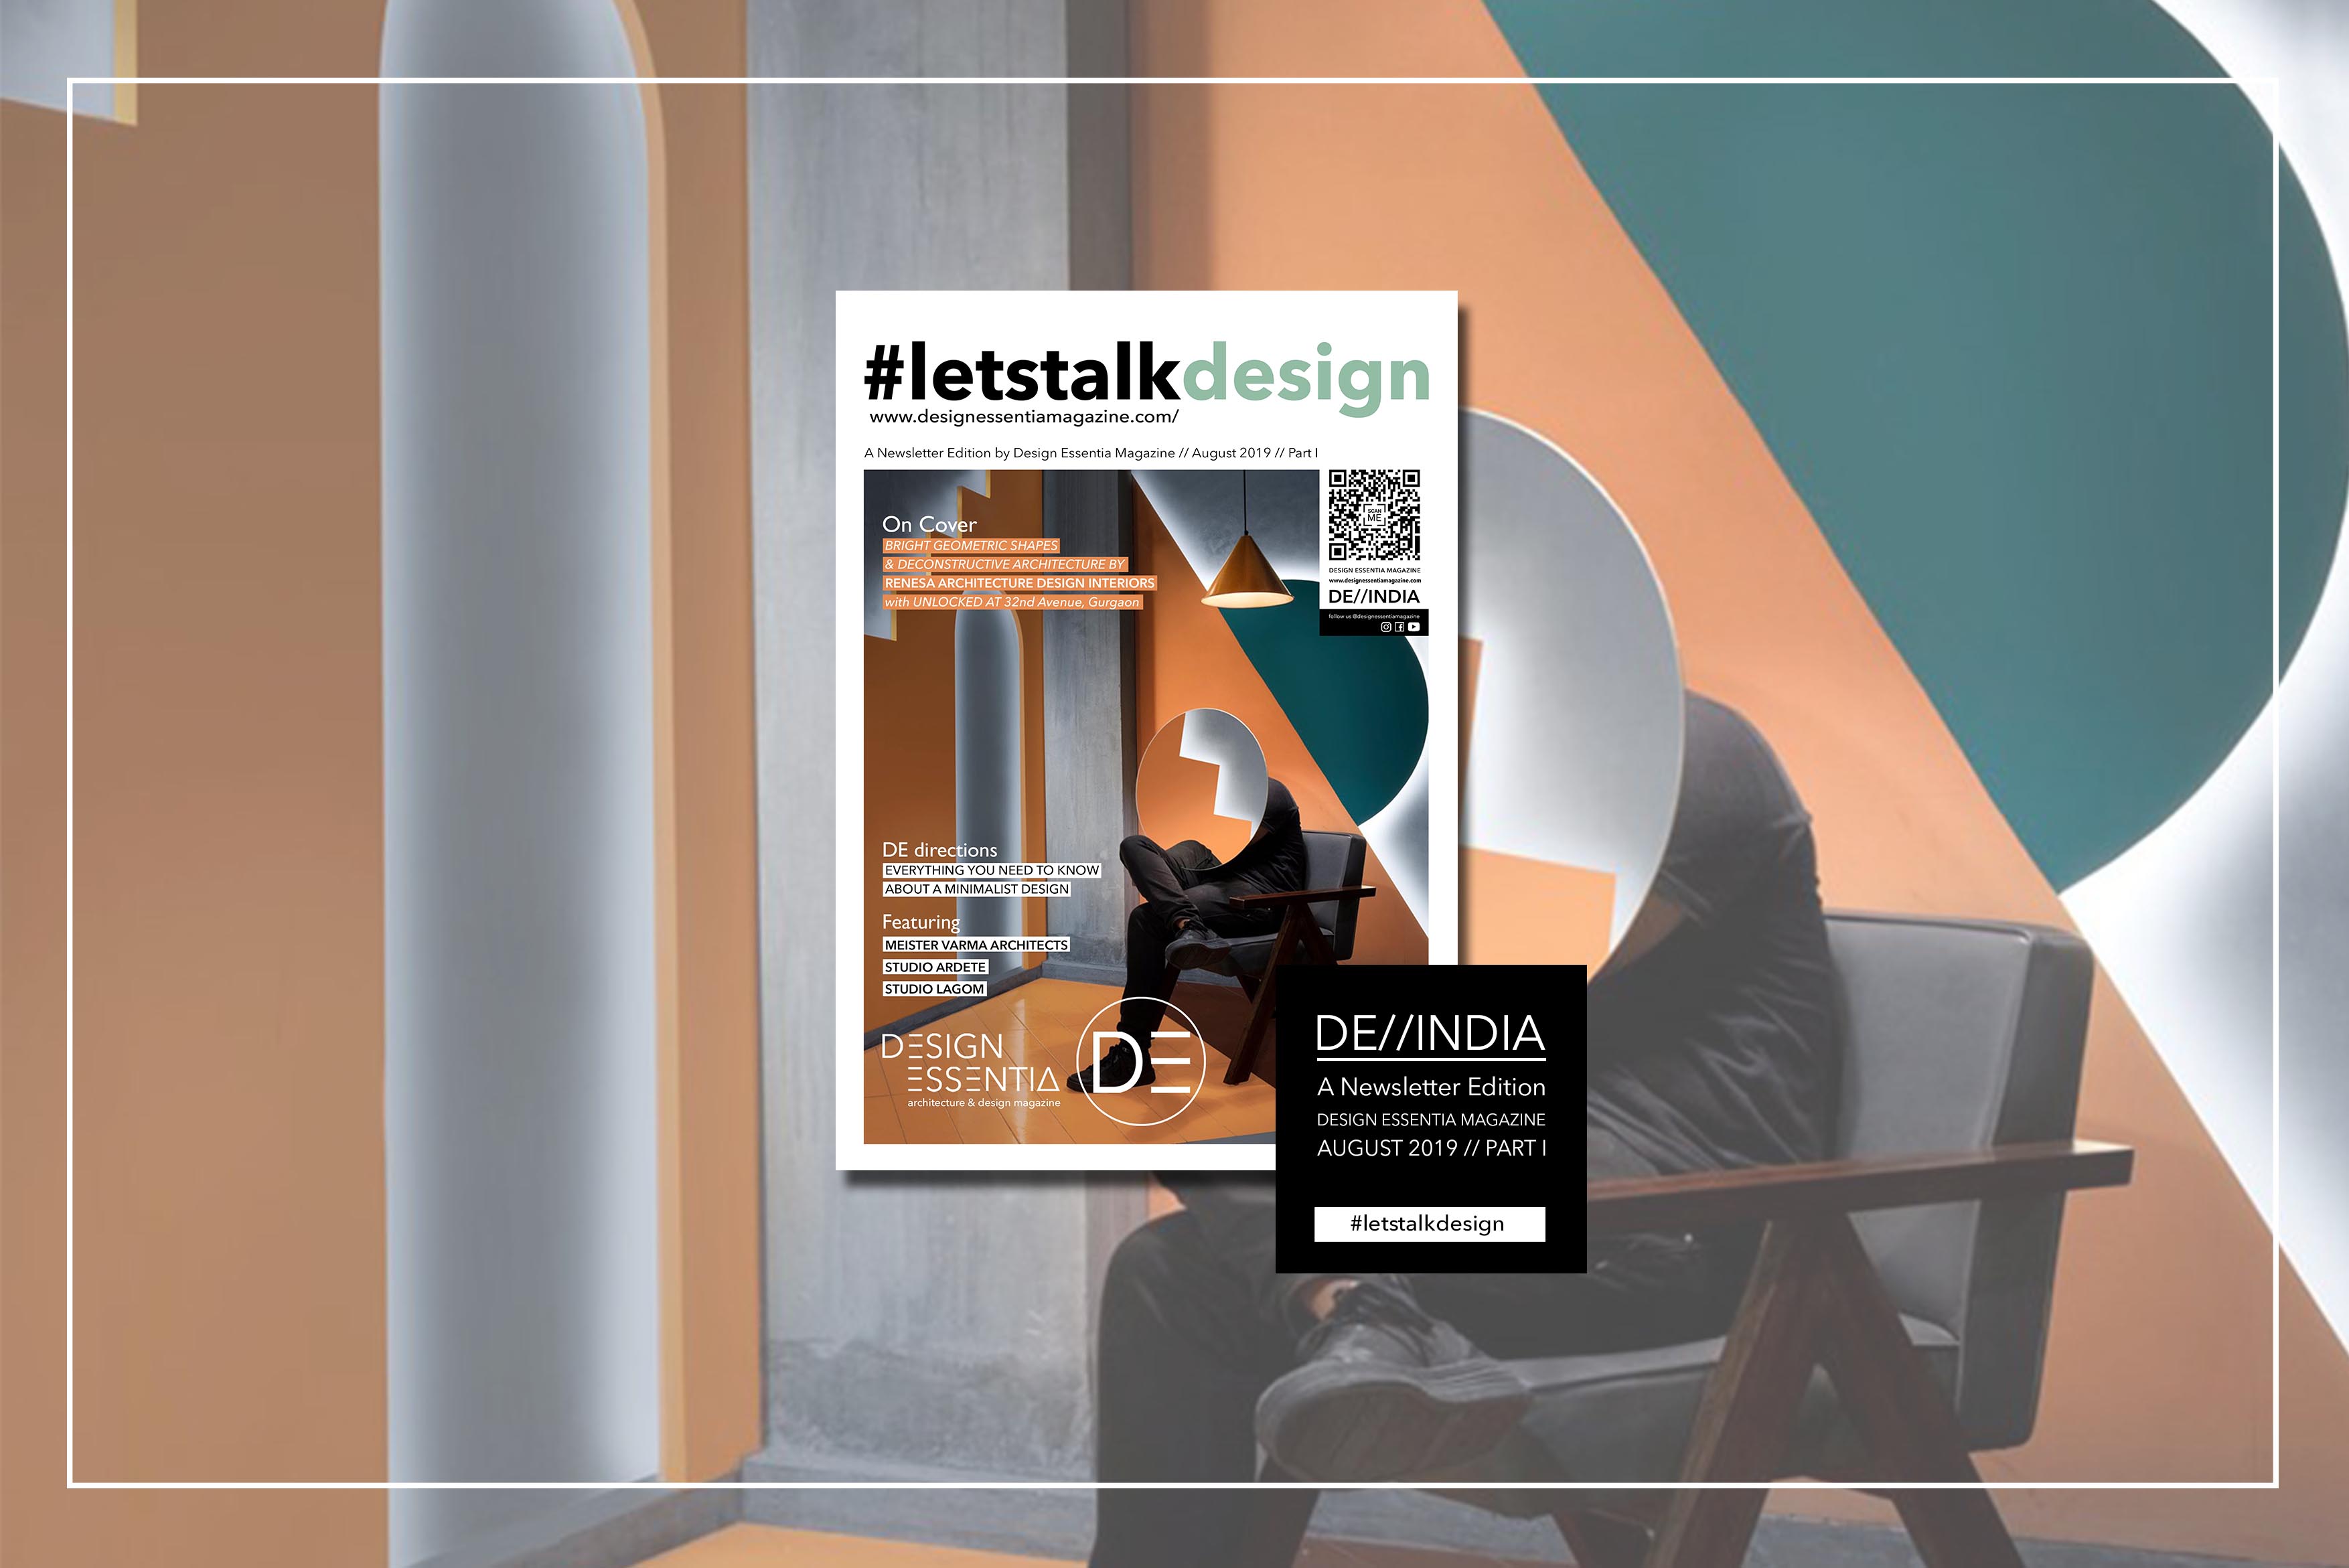 Design Essentia Magazine Architecture And Design Magazine